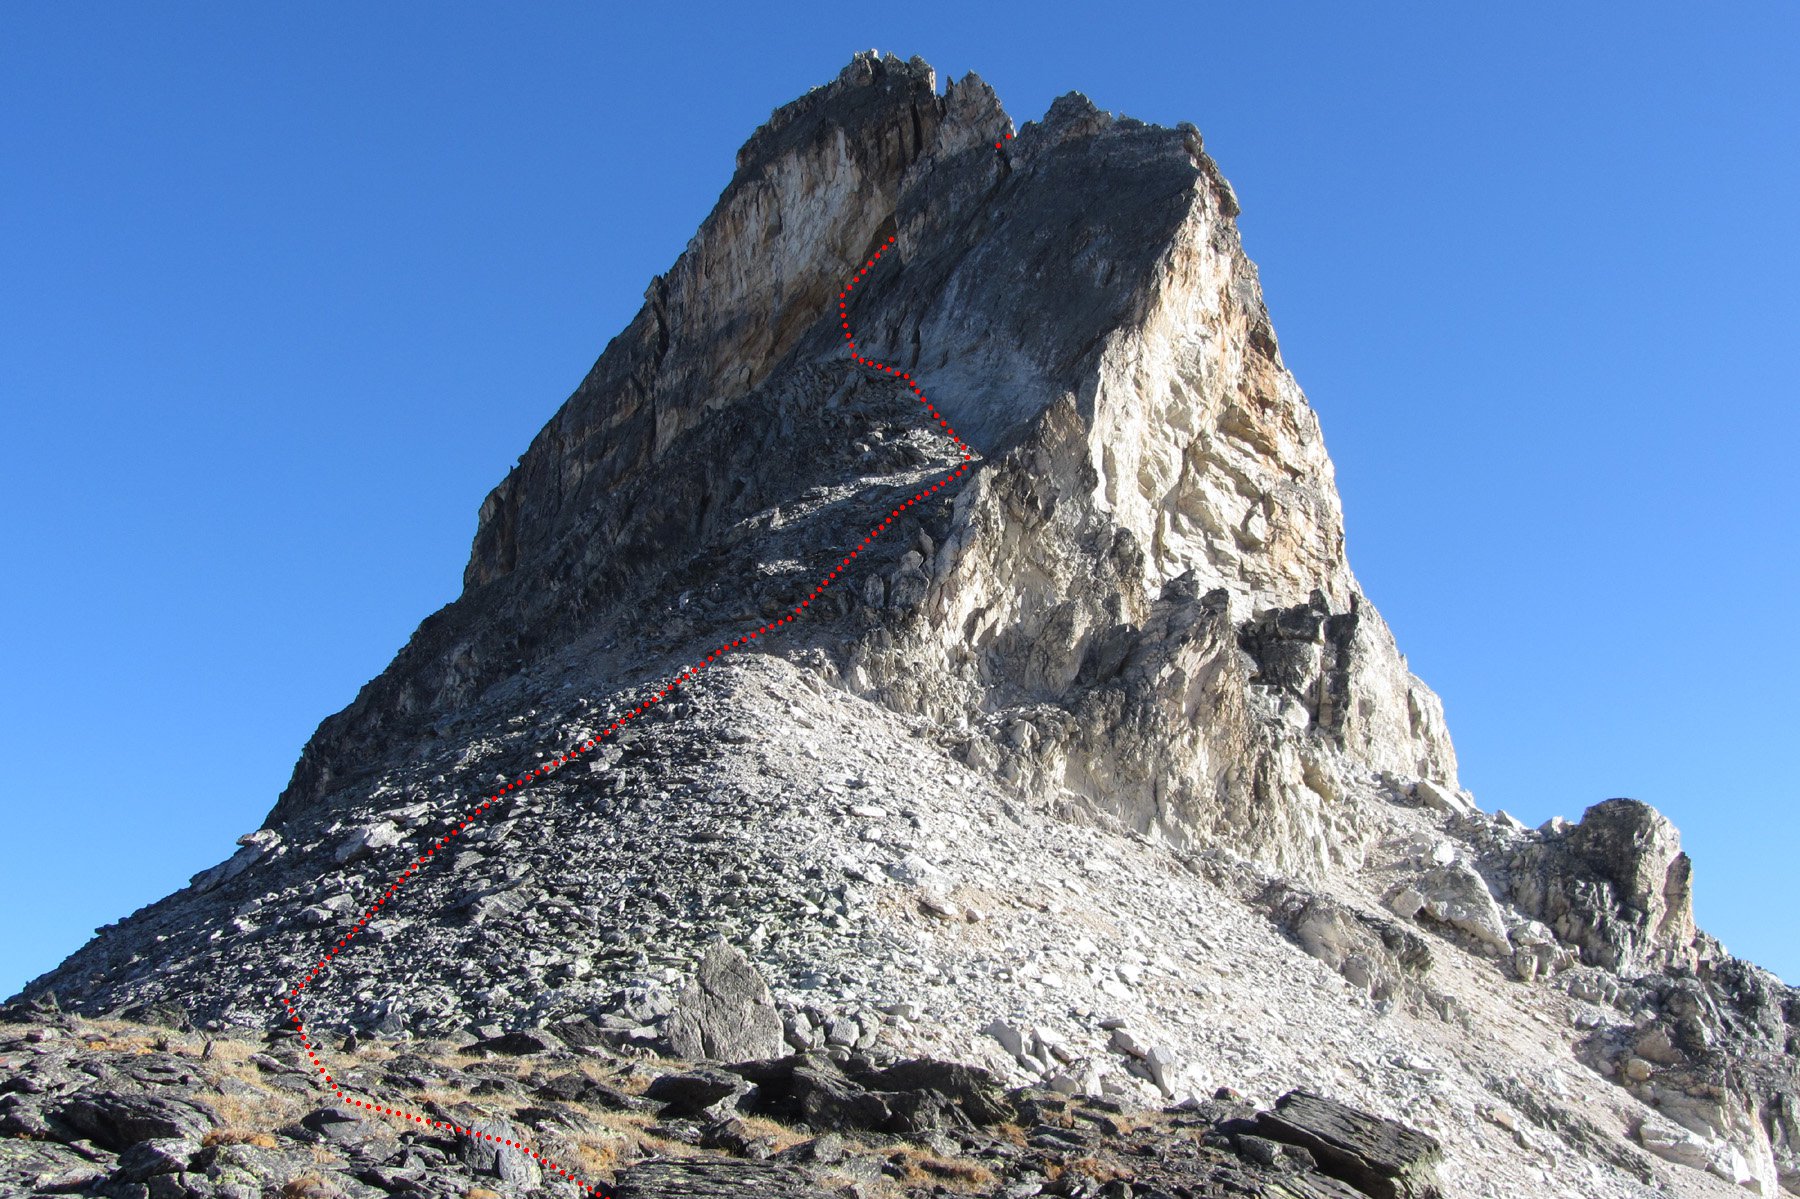 il primo tratto del percorso di salita alla rocca, visto dal col peyron